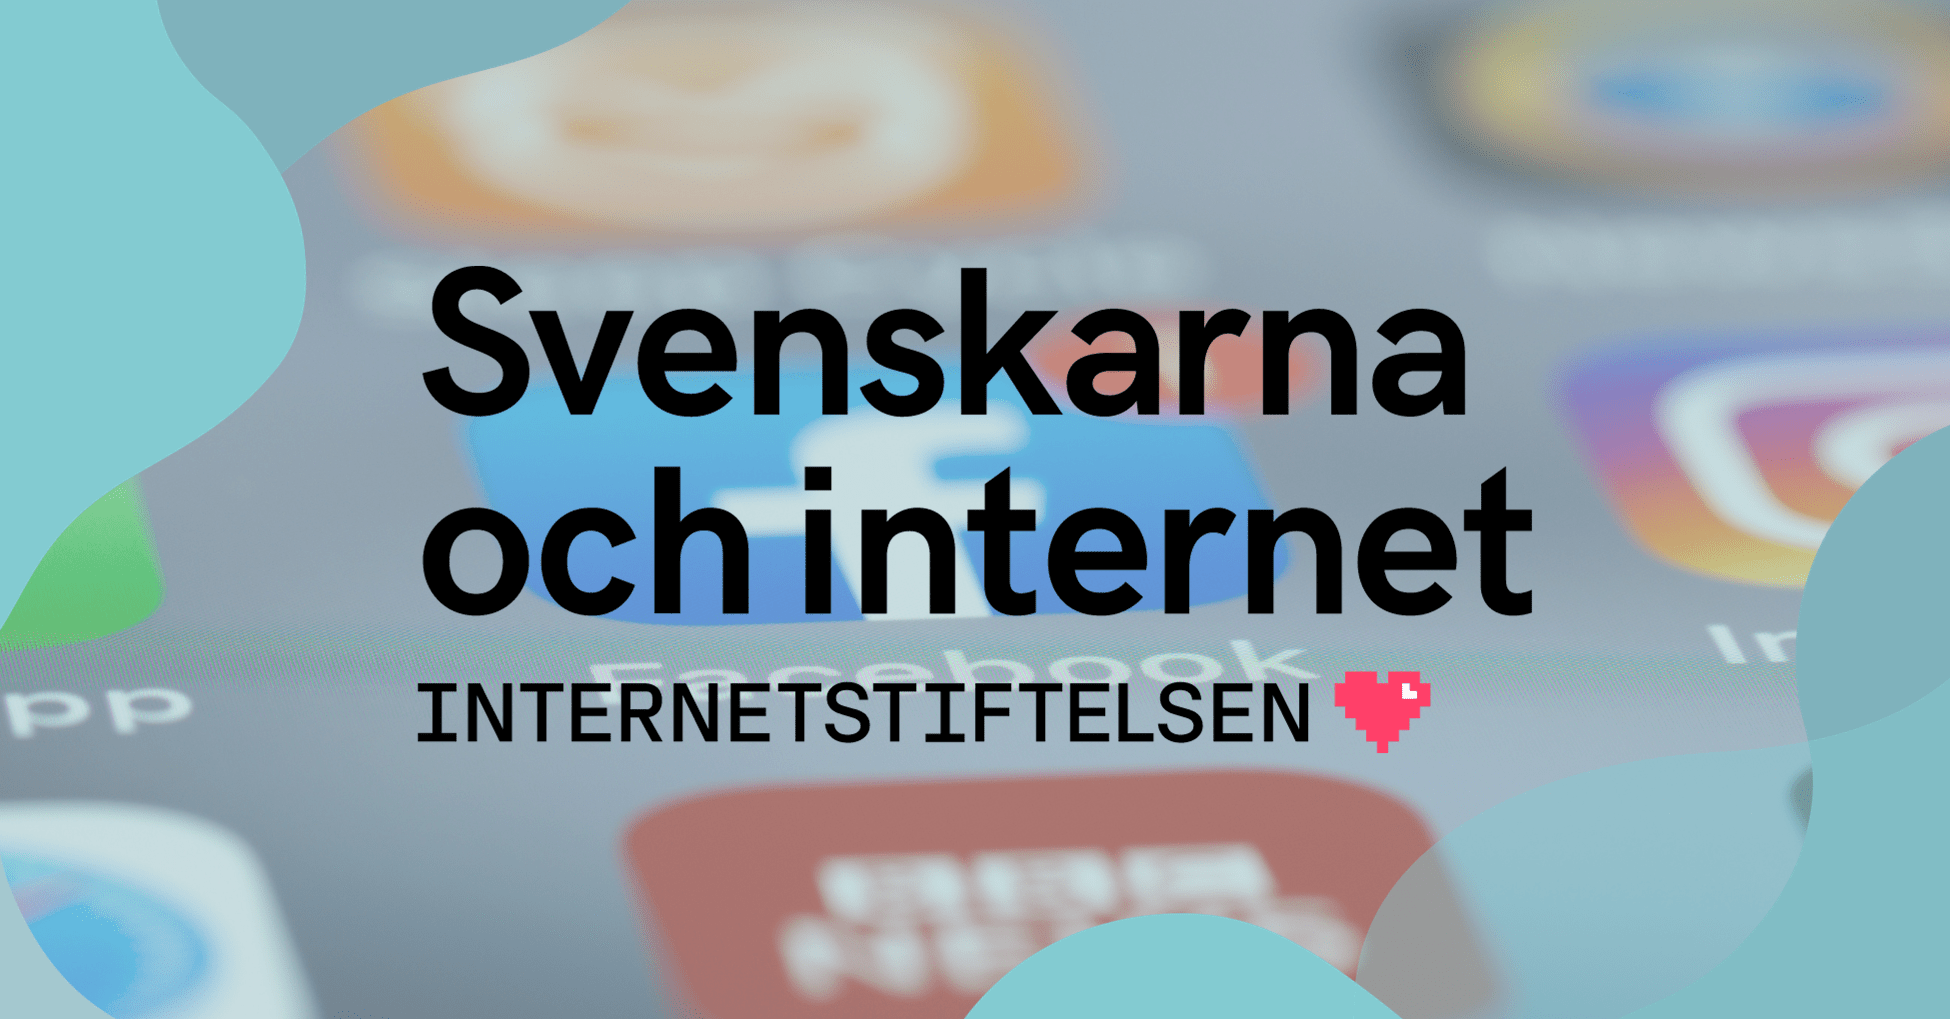 Svenskarna och internet